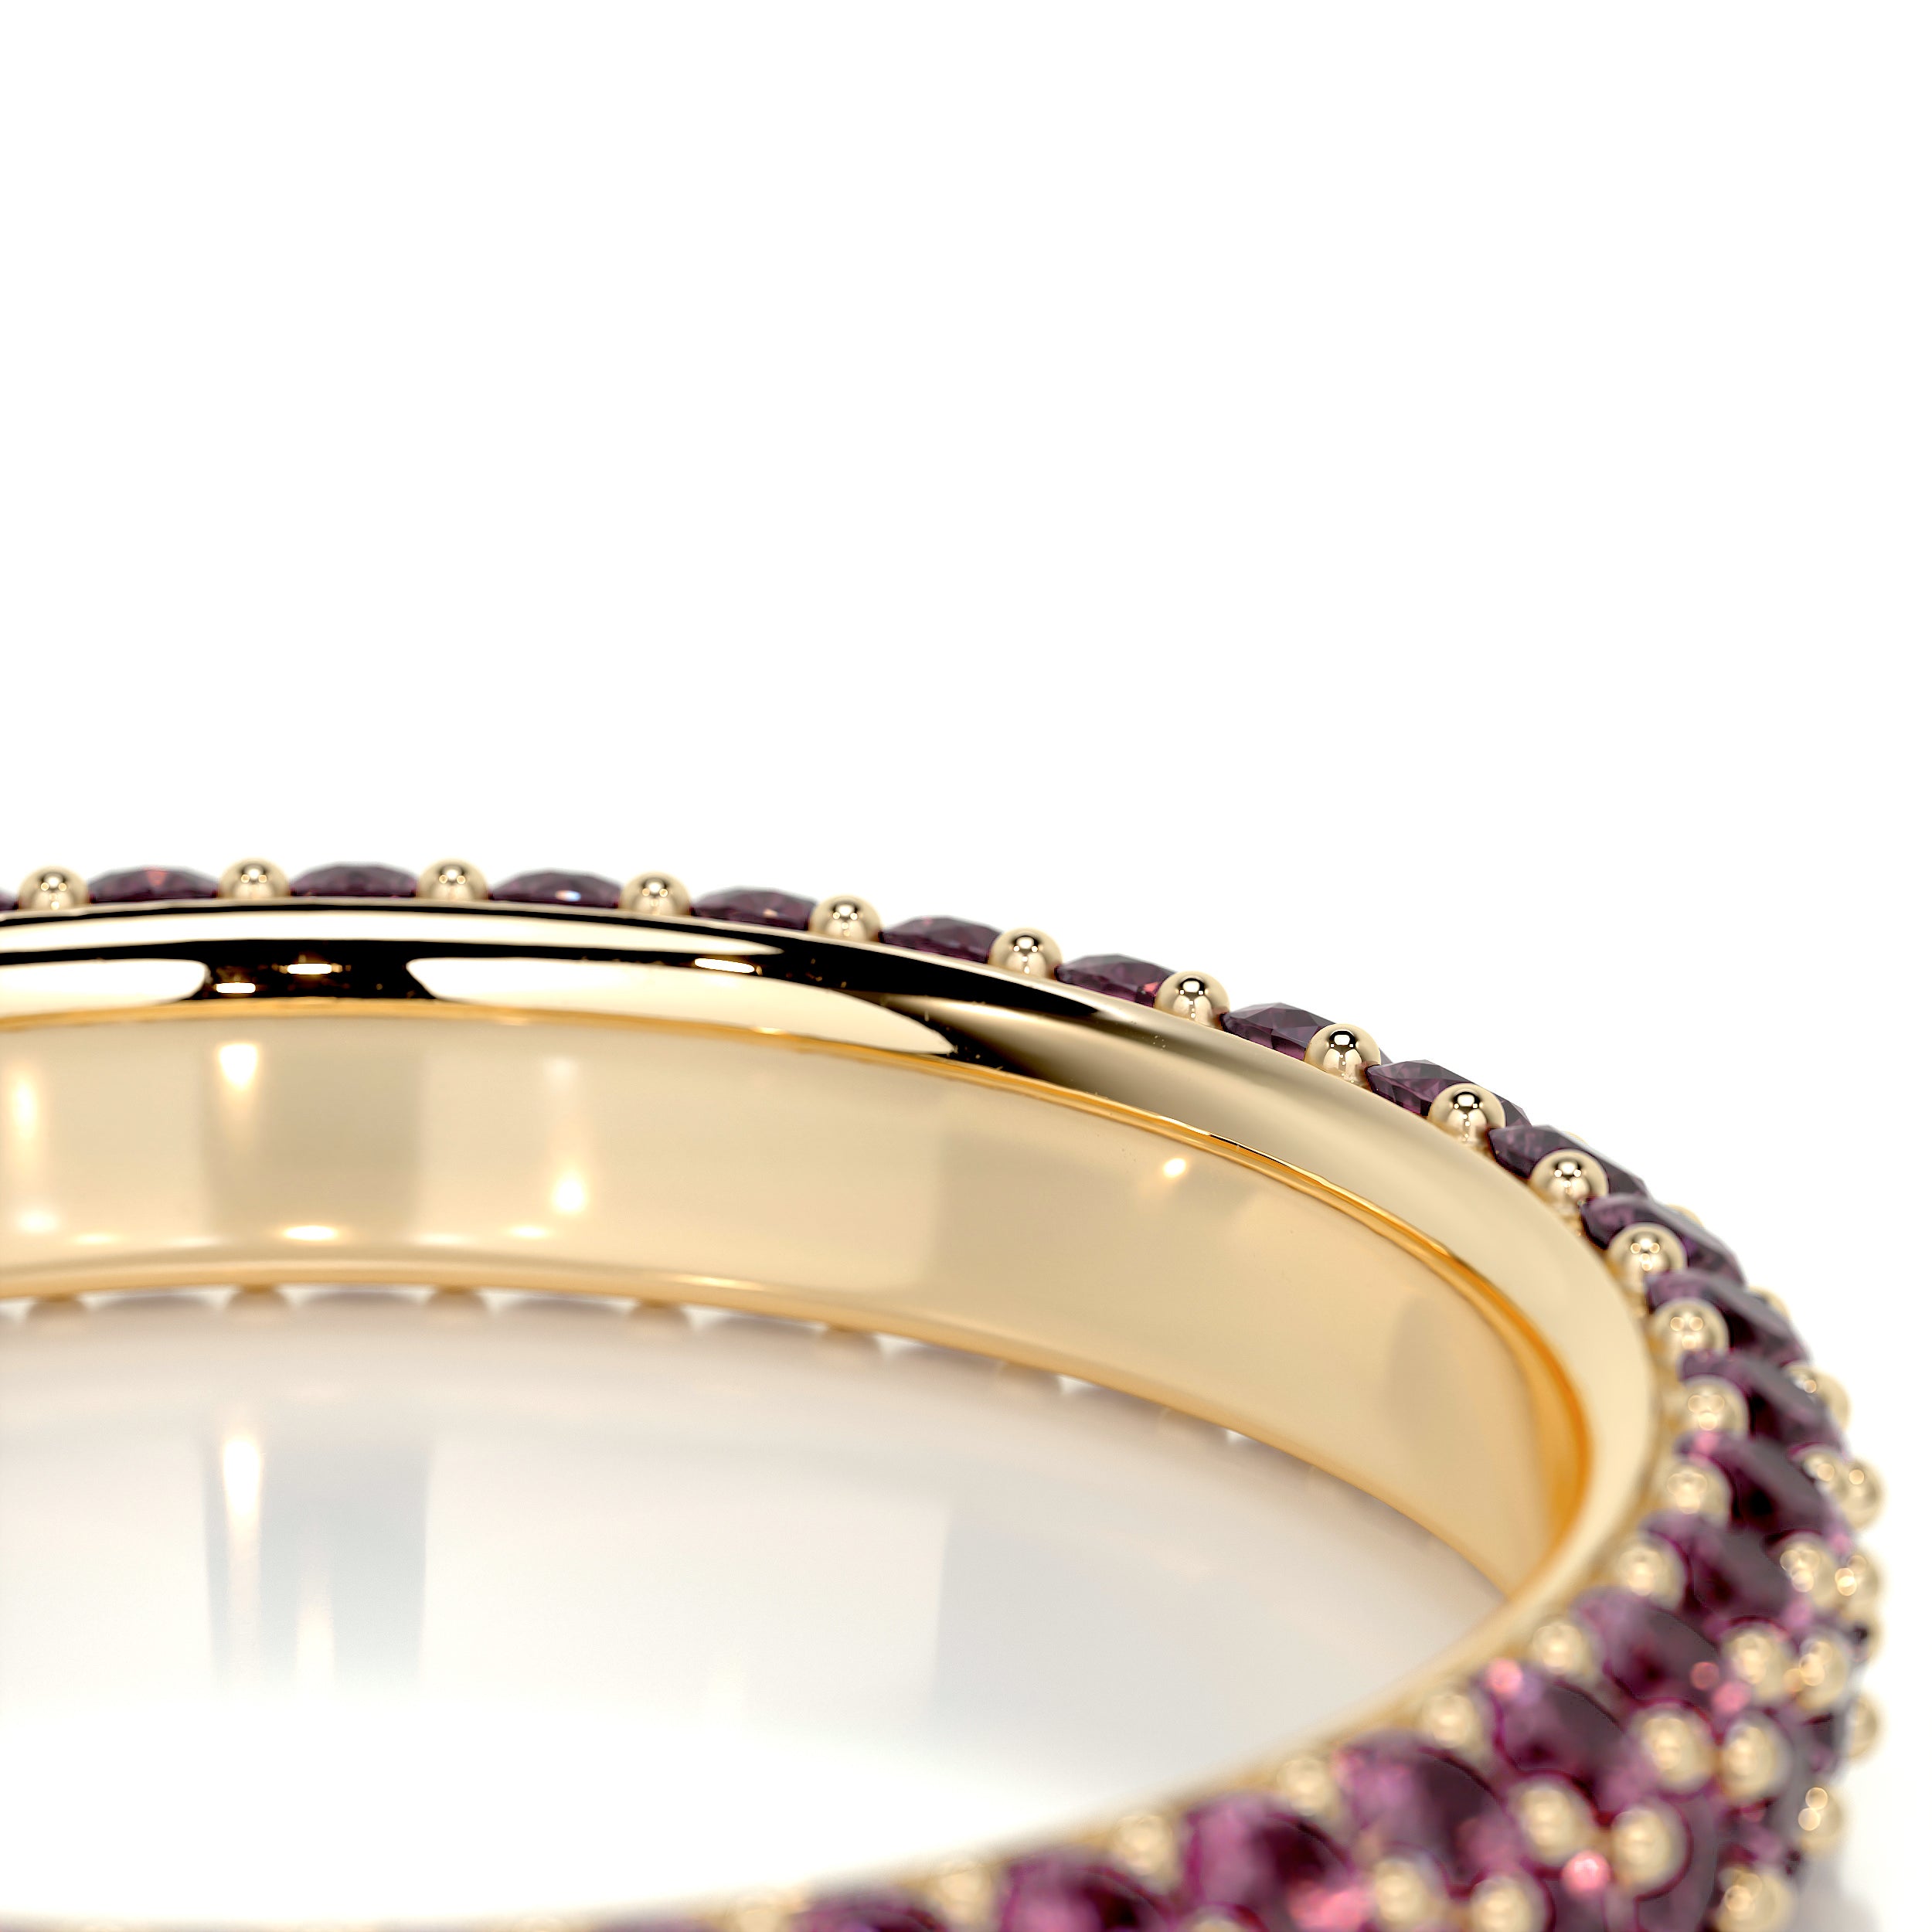 Emma Pink Gemstone Wedding Ring   (1.25 Carat) - 18K Yellow Gold